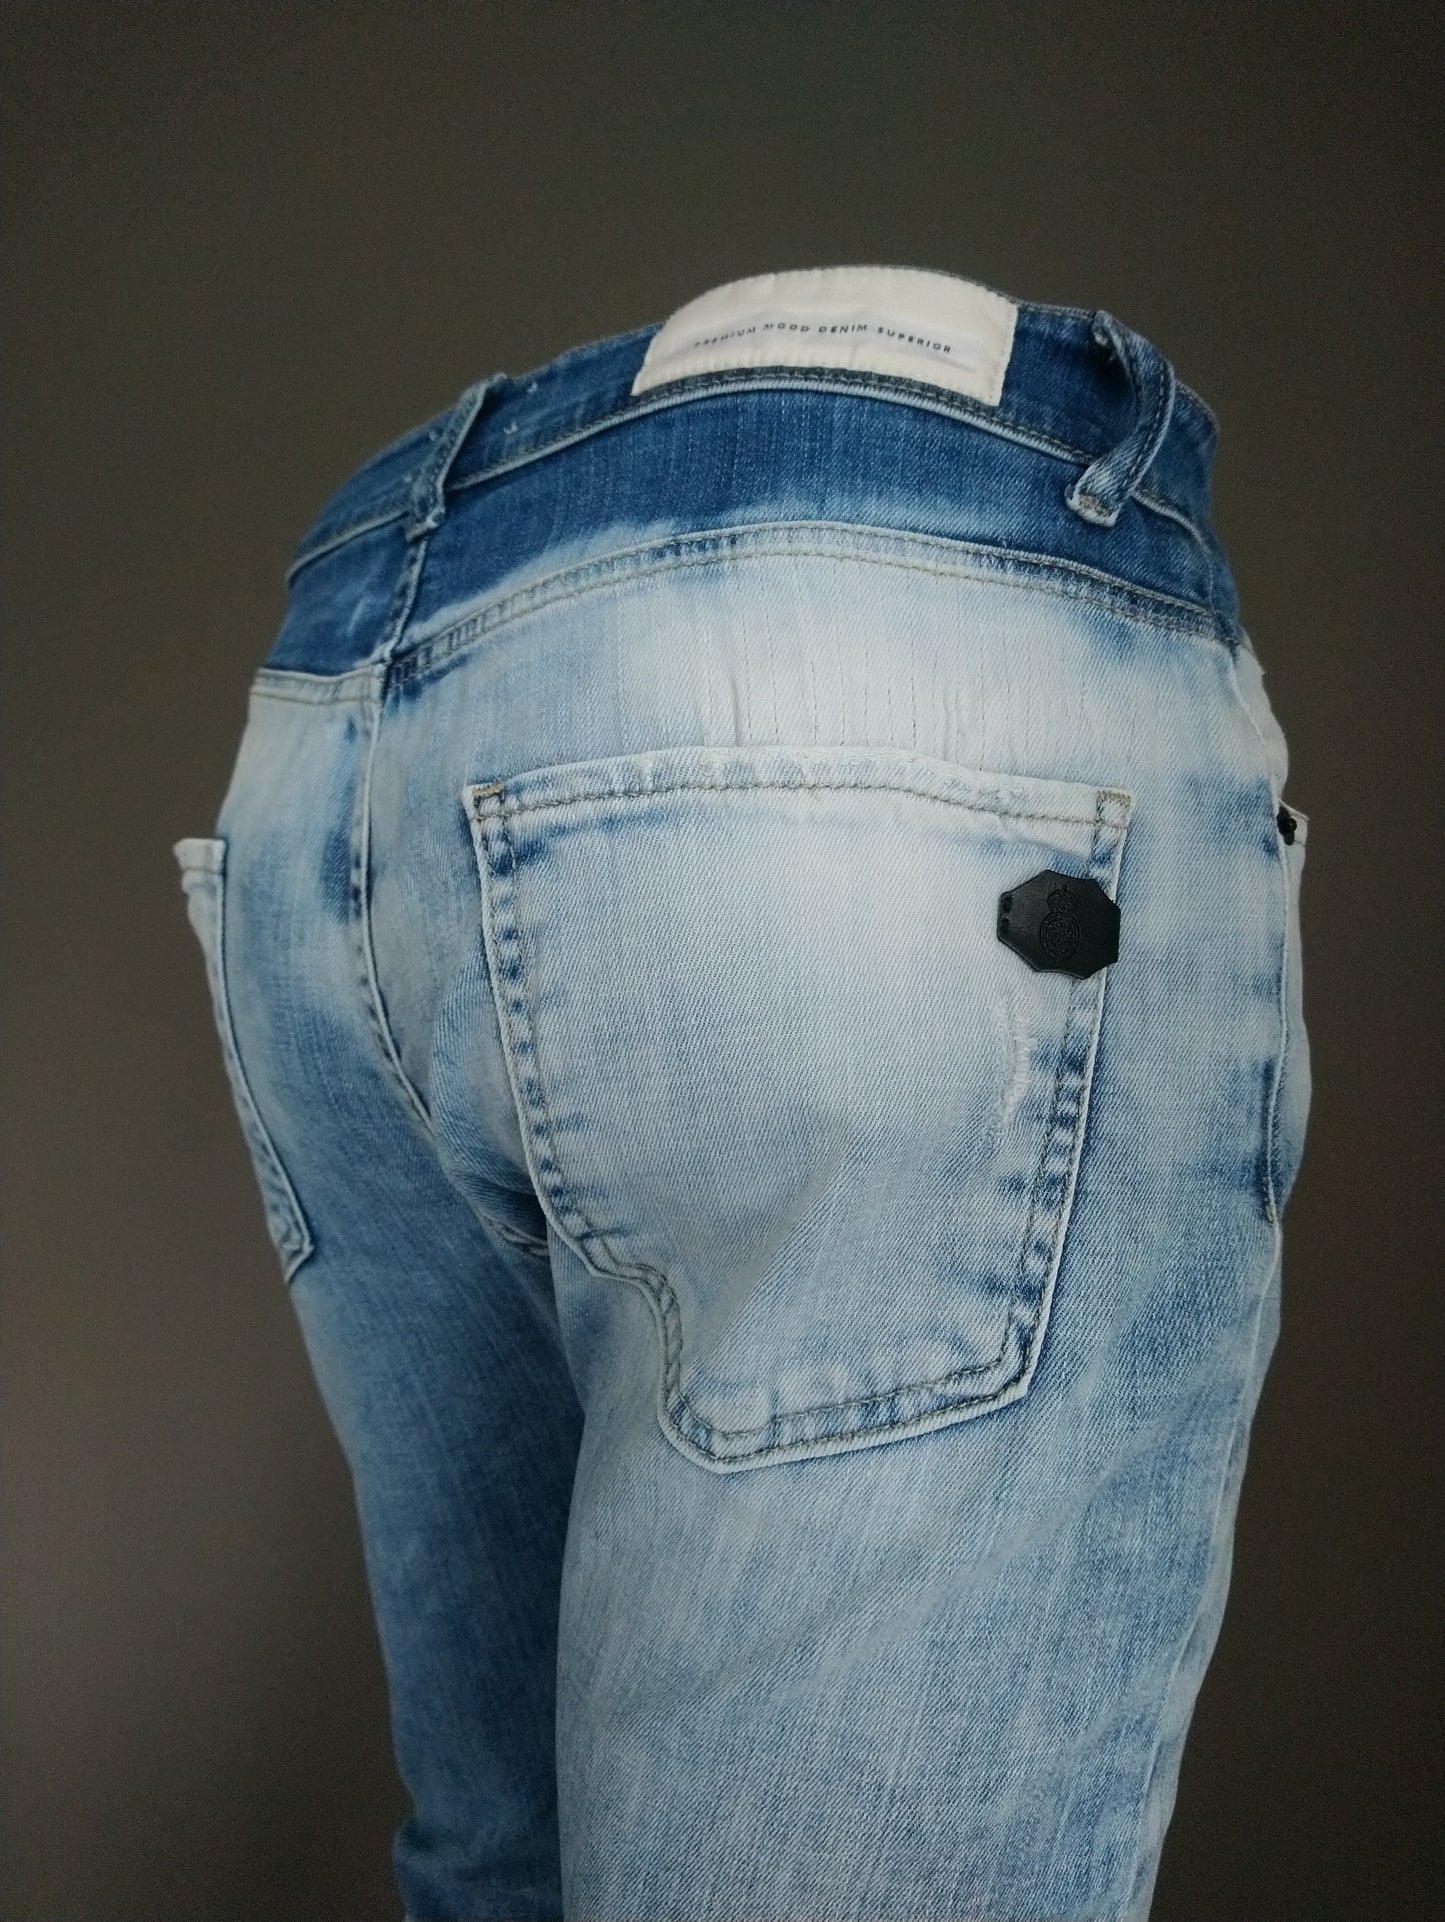 Jeans PMDS (Premium Mood Denim Superior). Colorato azzurro. Taglia W32-L30. Stirata.